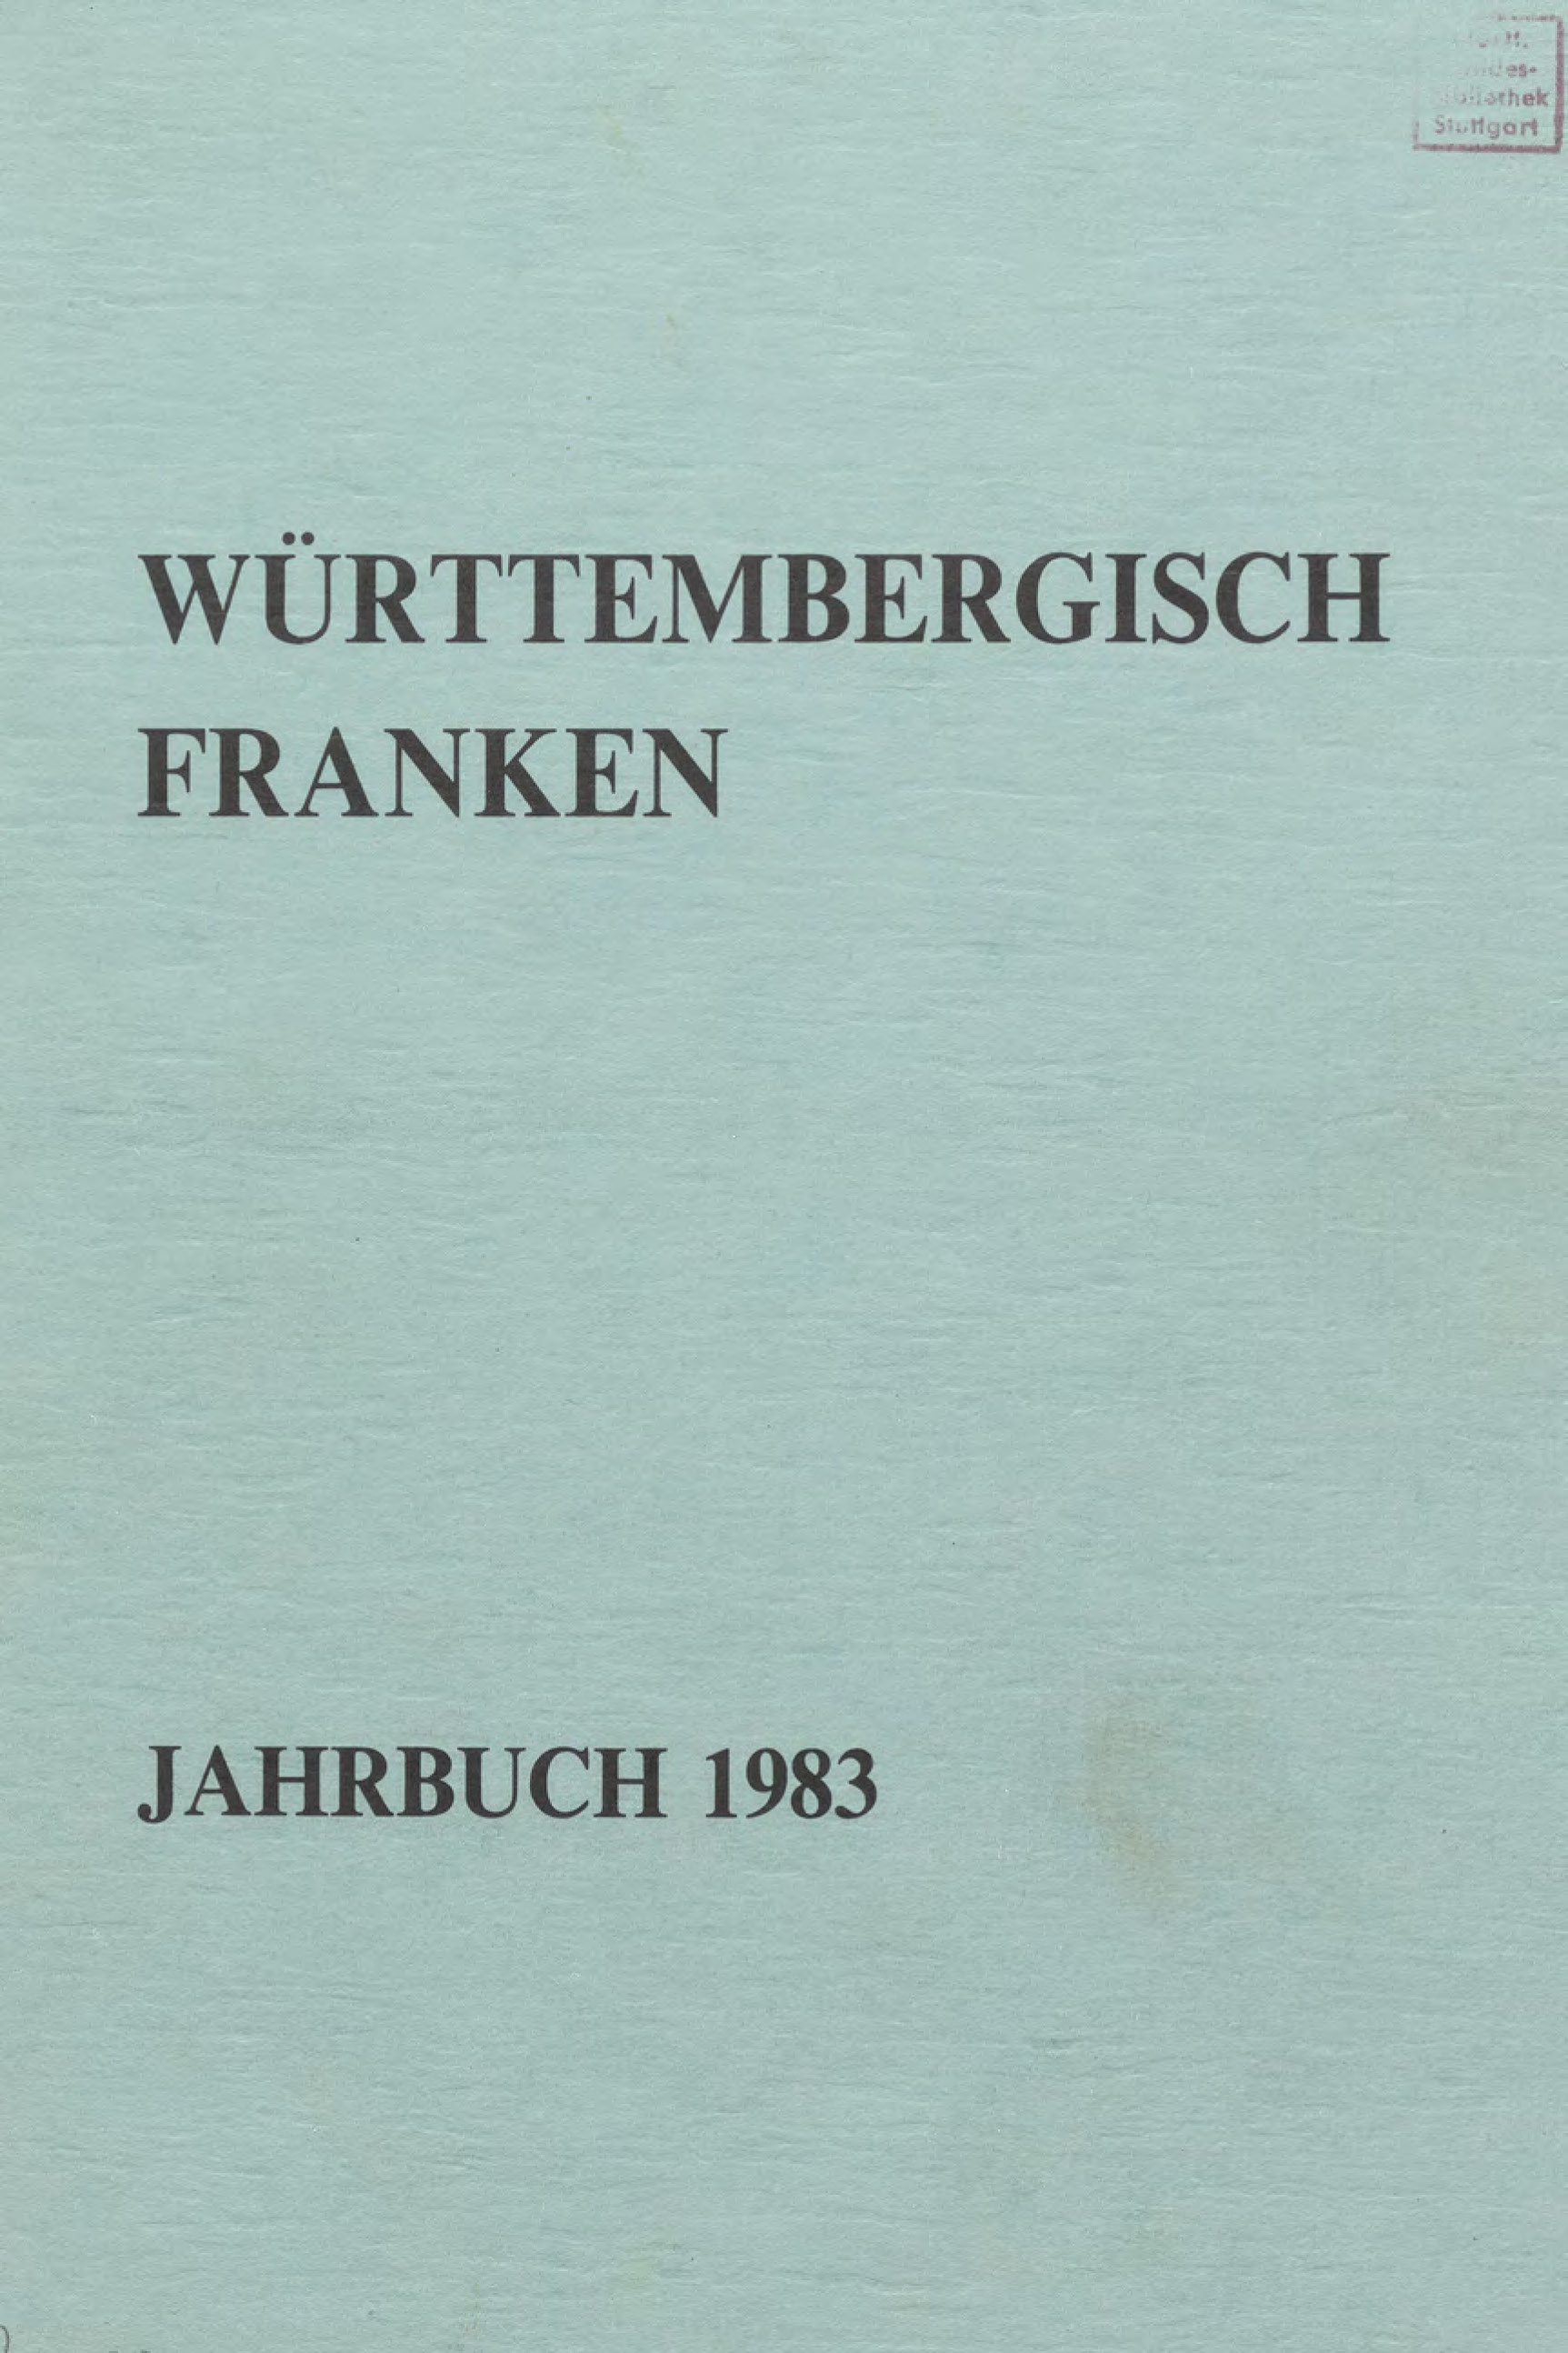                     Ansehen Bd. 67 (1983): Württembergisch Franken
                